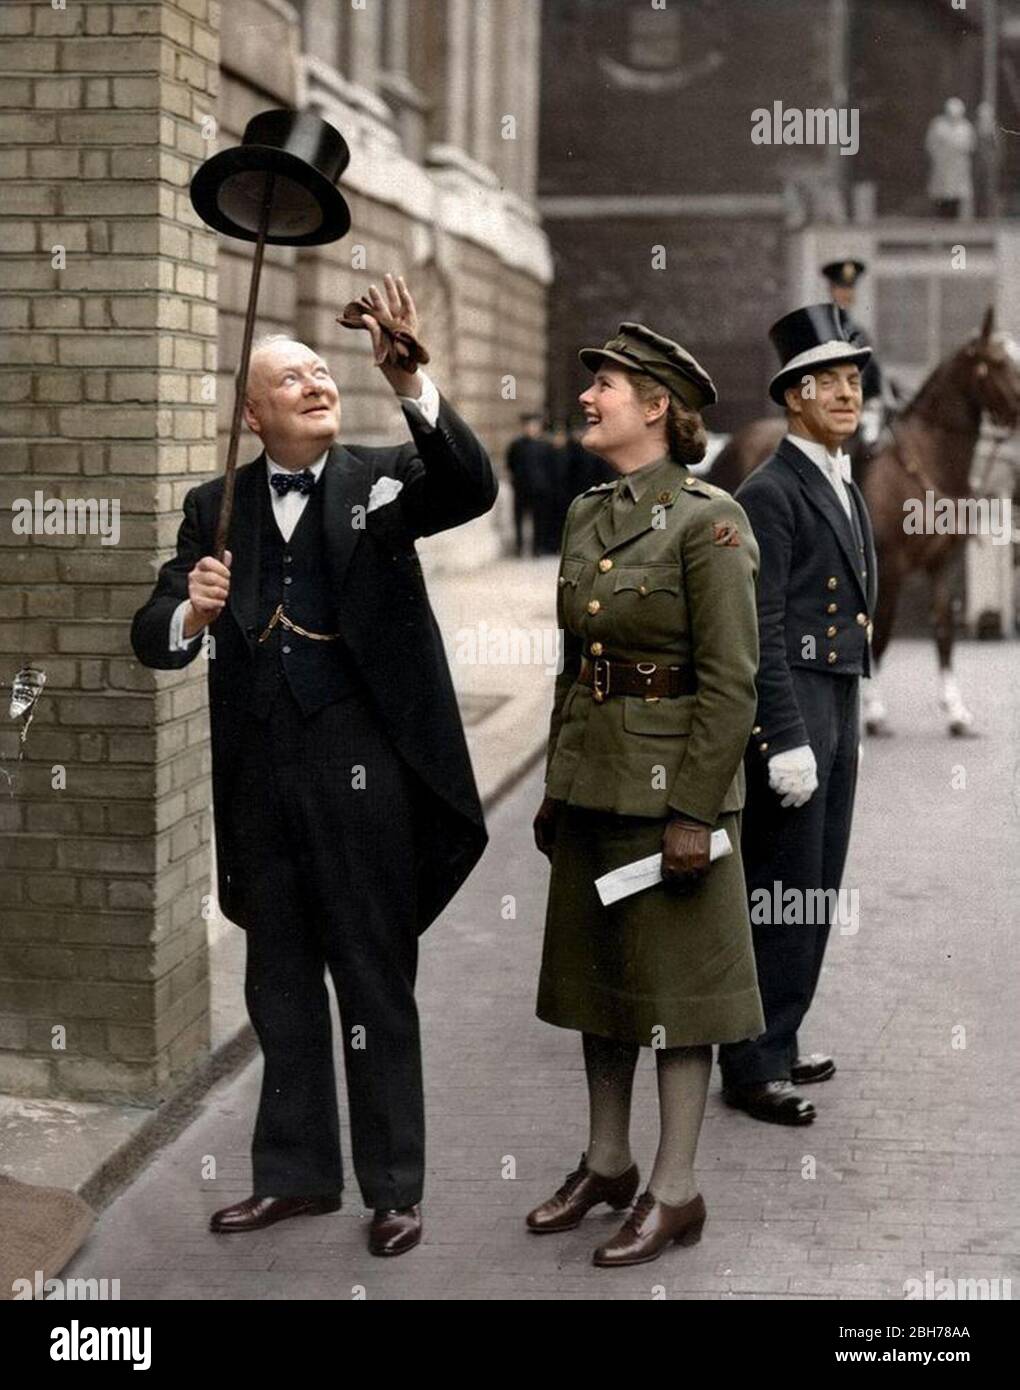 Sir Winston Leonard Spencer-Churchill (30. November 1874 C 24. Januar 1965) war ein britischer Politiker, Armeeoffizier und Schriftsteller. Hier mit seiner Tochter Stockfoto